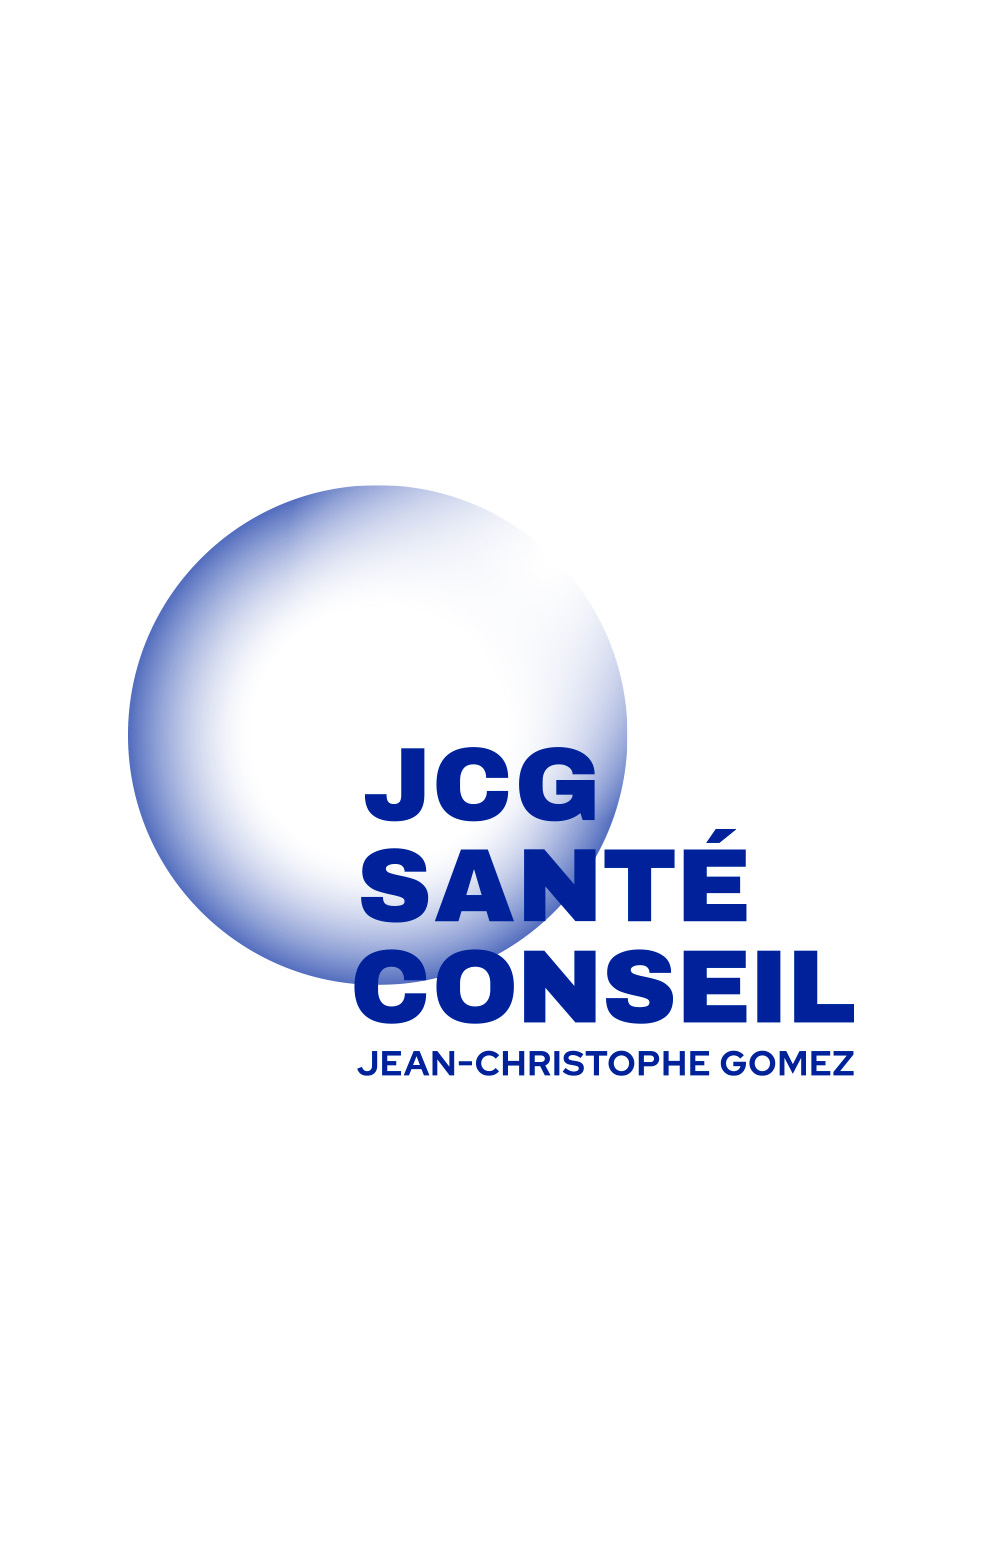 autograff-design-graphique-graphiste-toulouse-france-logo-website-jcg-sante-conseil-coach-bleu